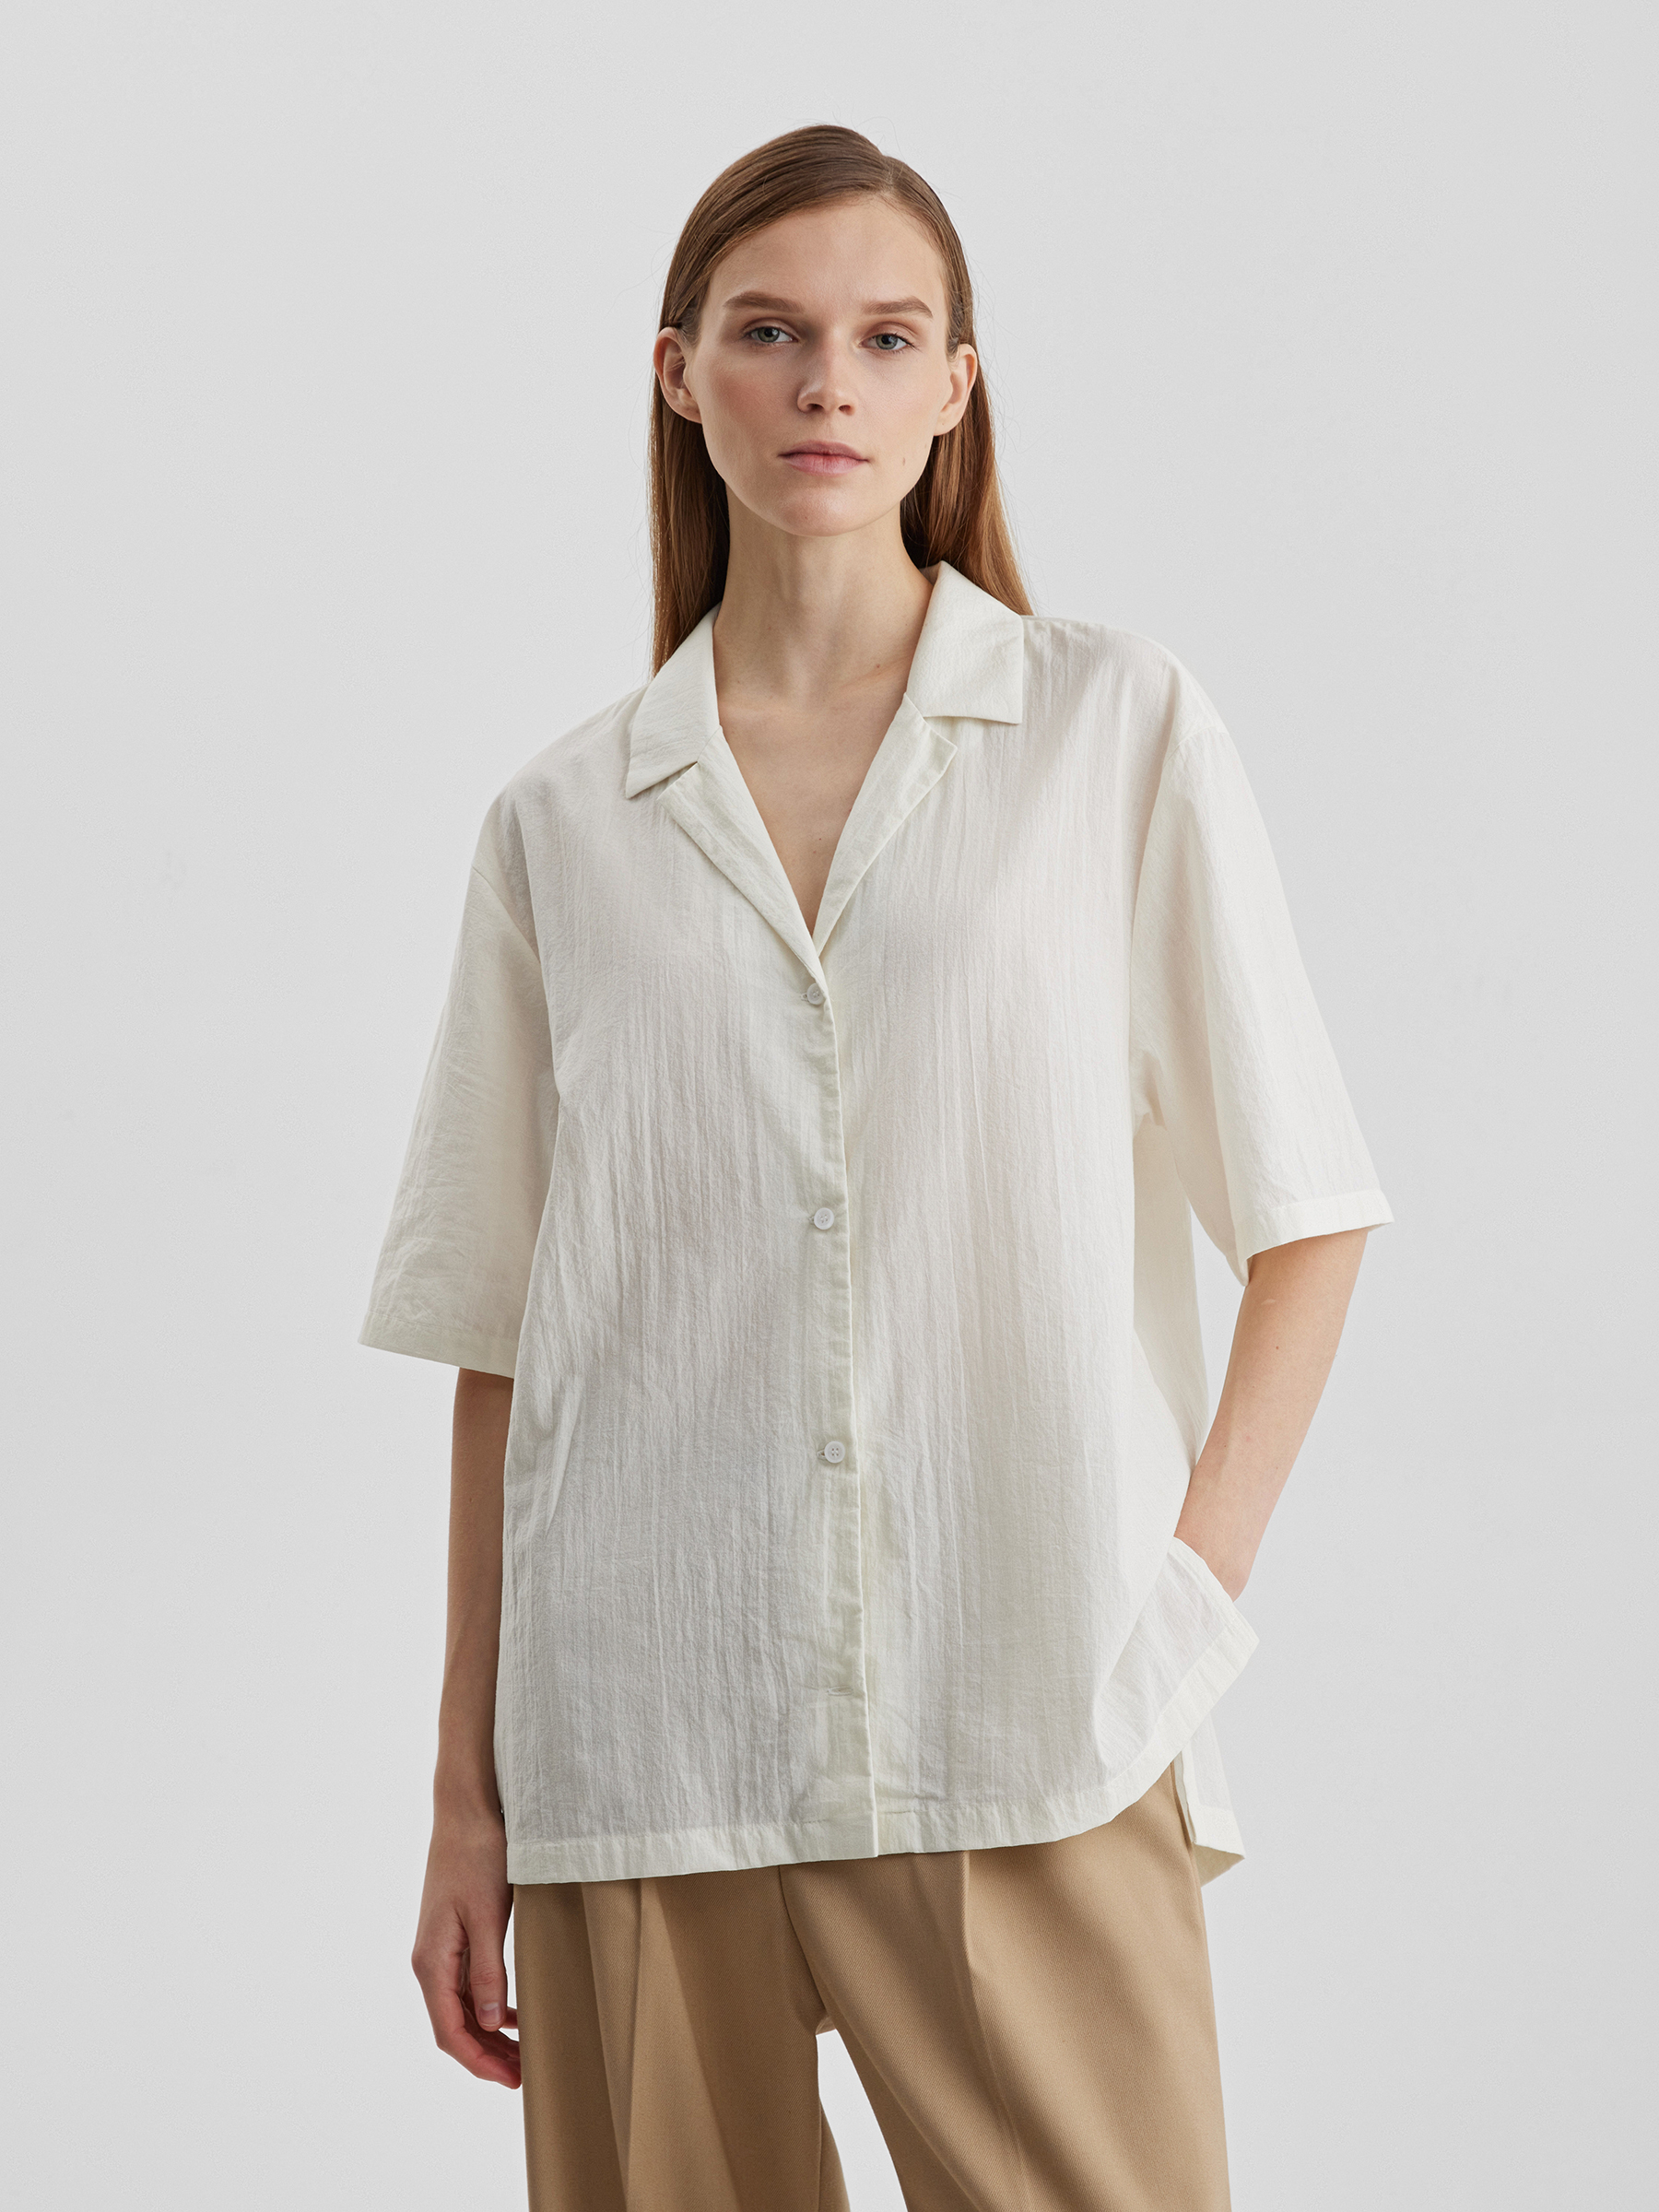 Рубашка женская с коротким рукавом из лёгкого хлопка, цвет – молочный